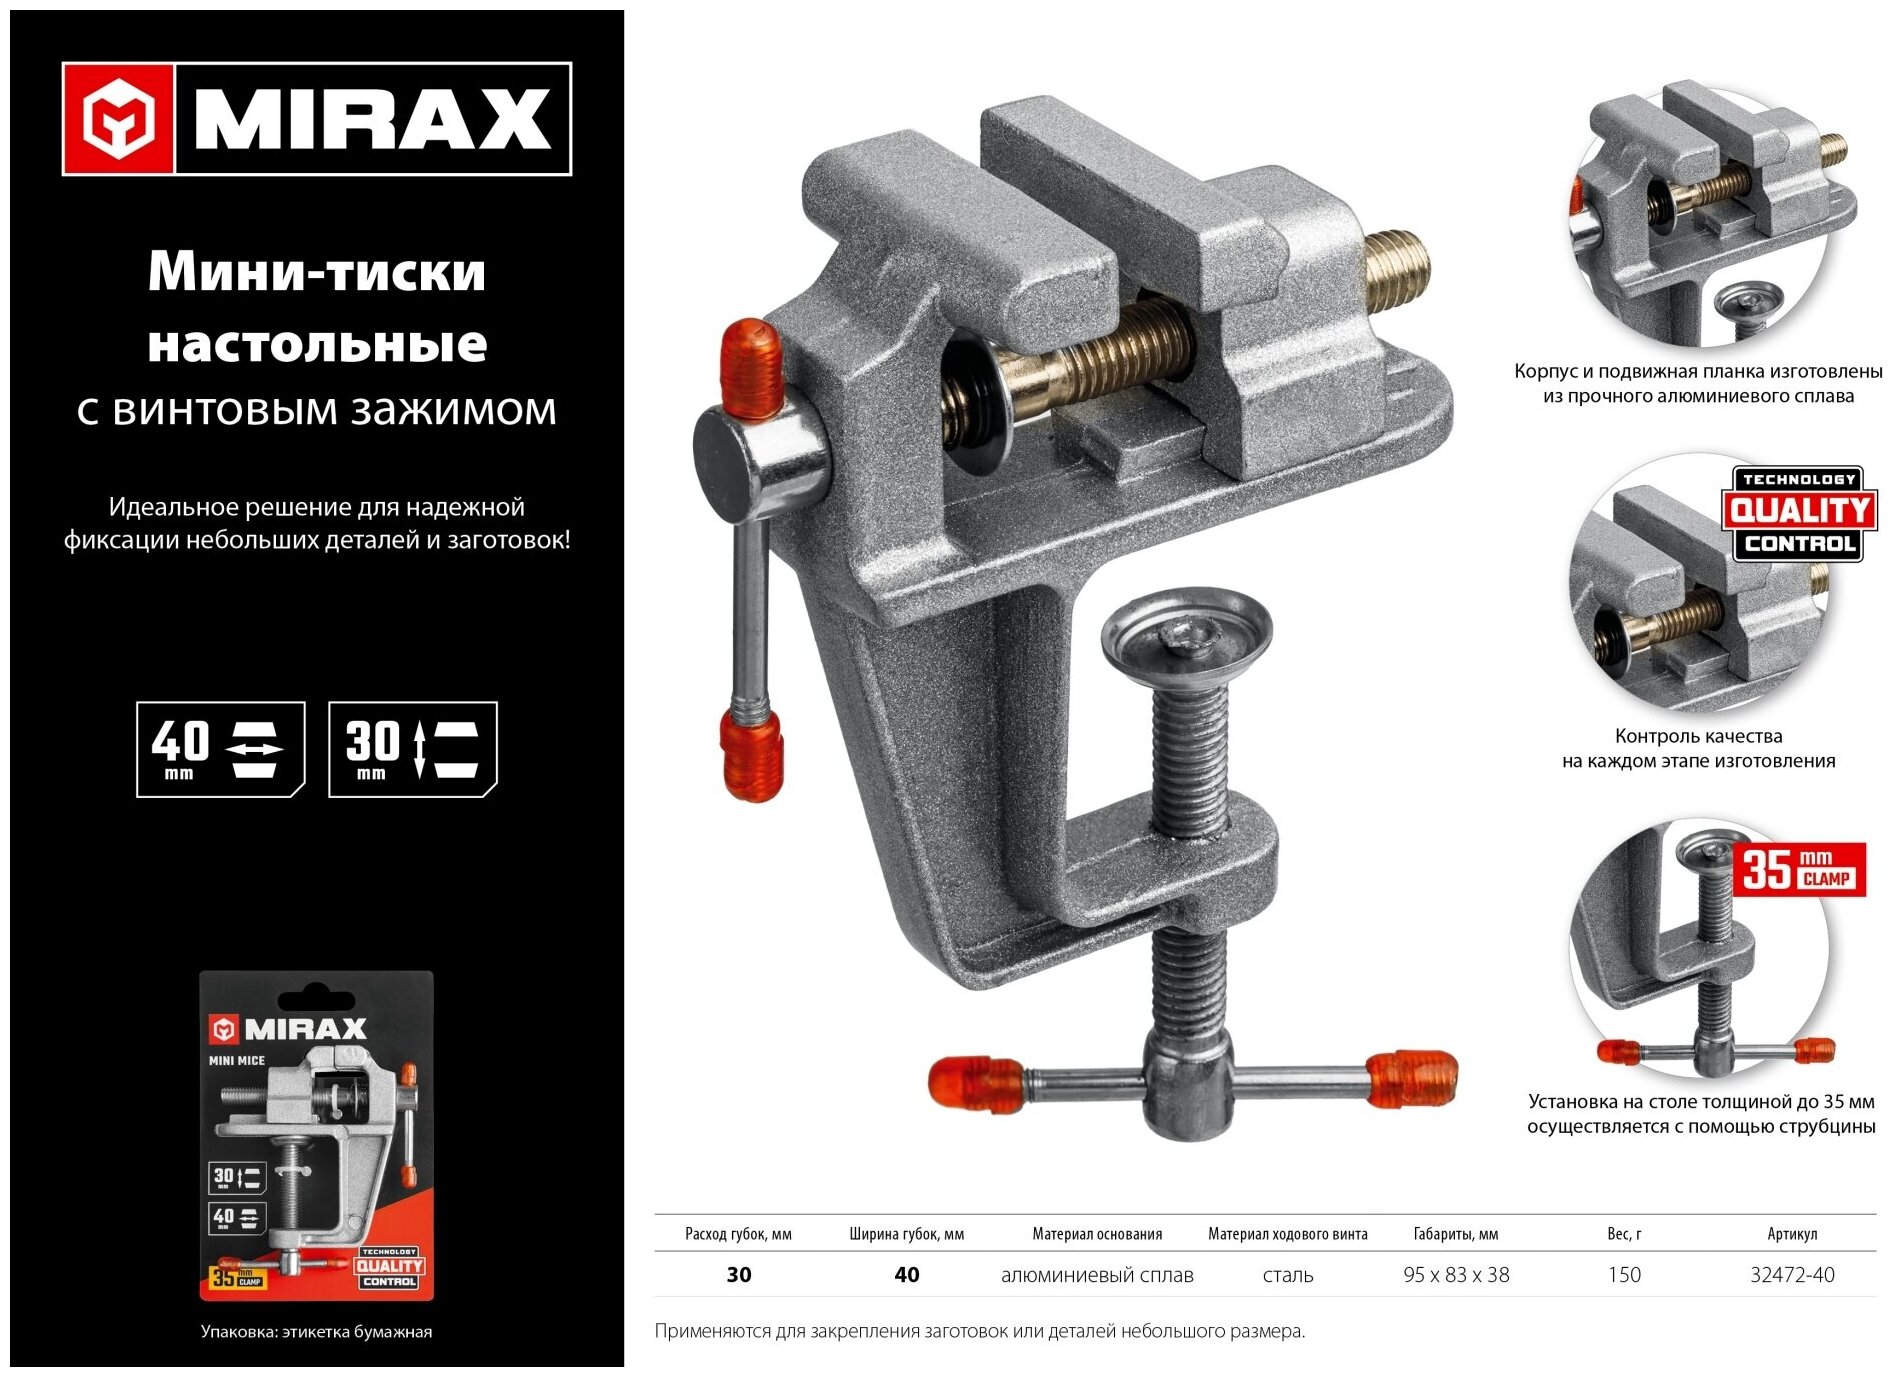 MIRAX 40 мм, Настольные тиски (32472-40)